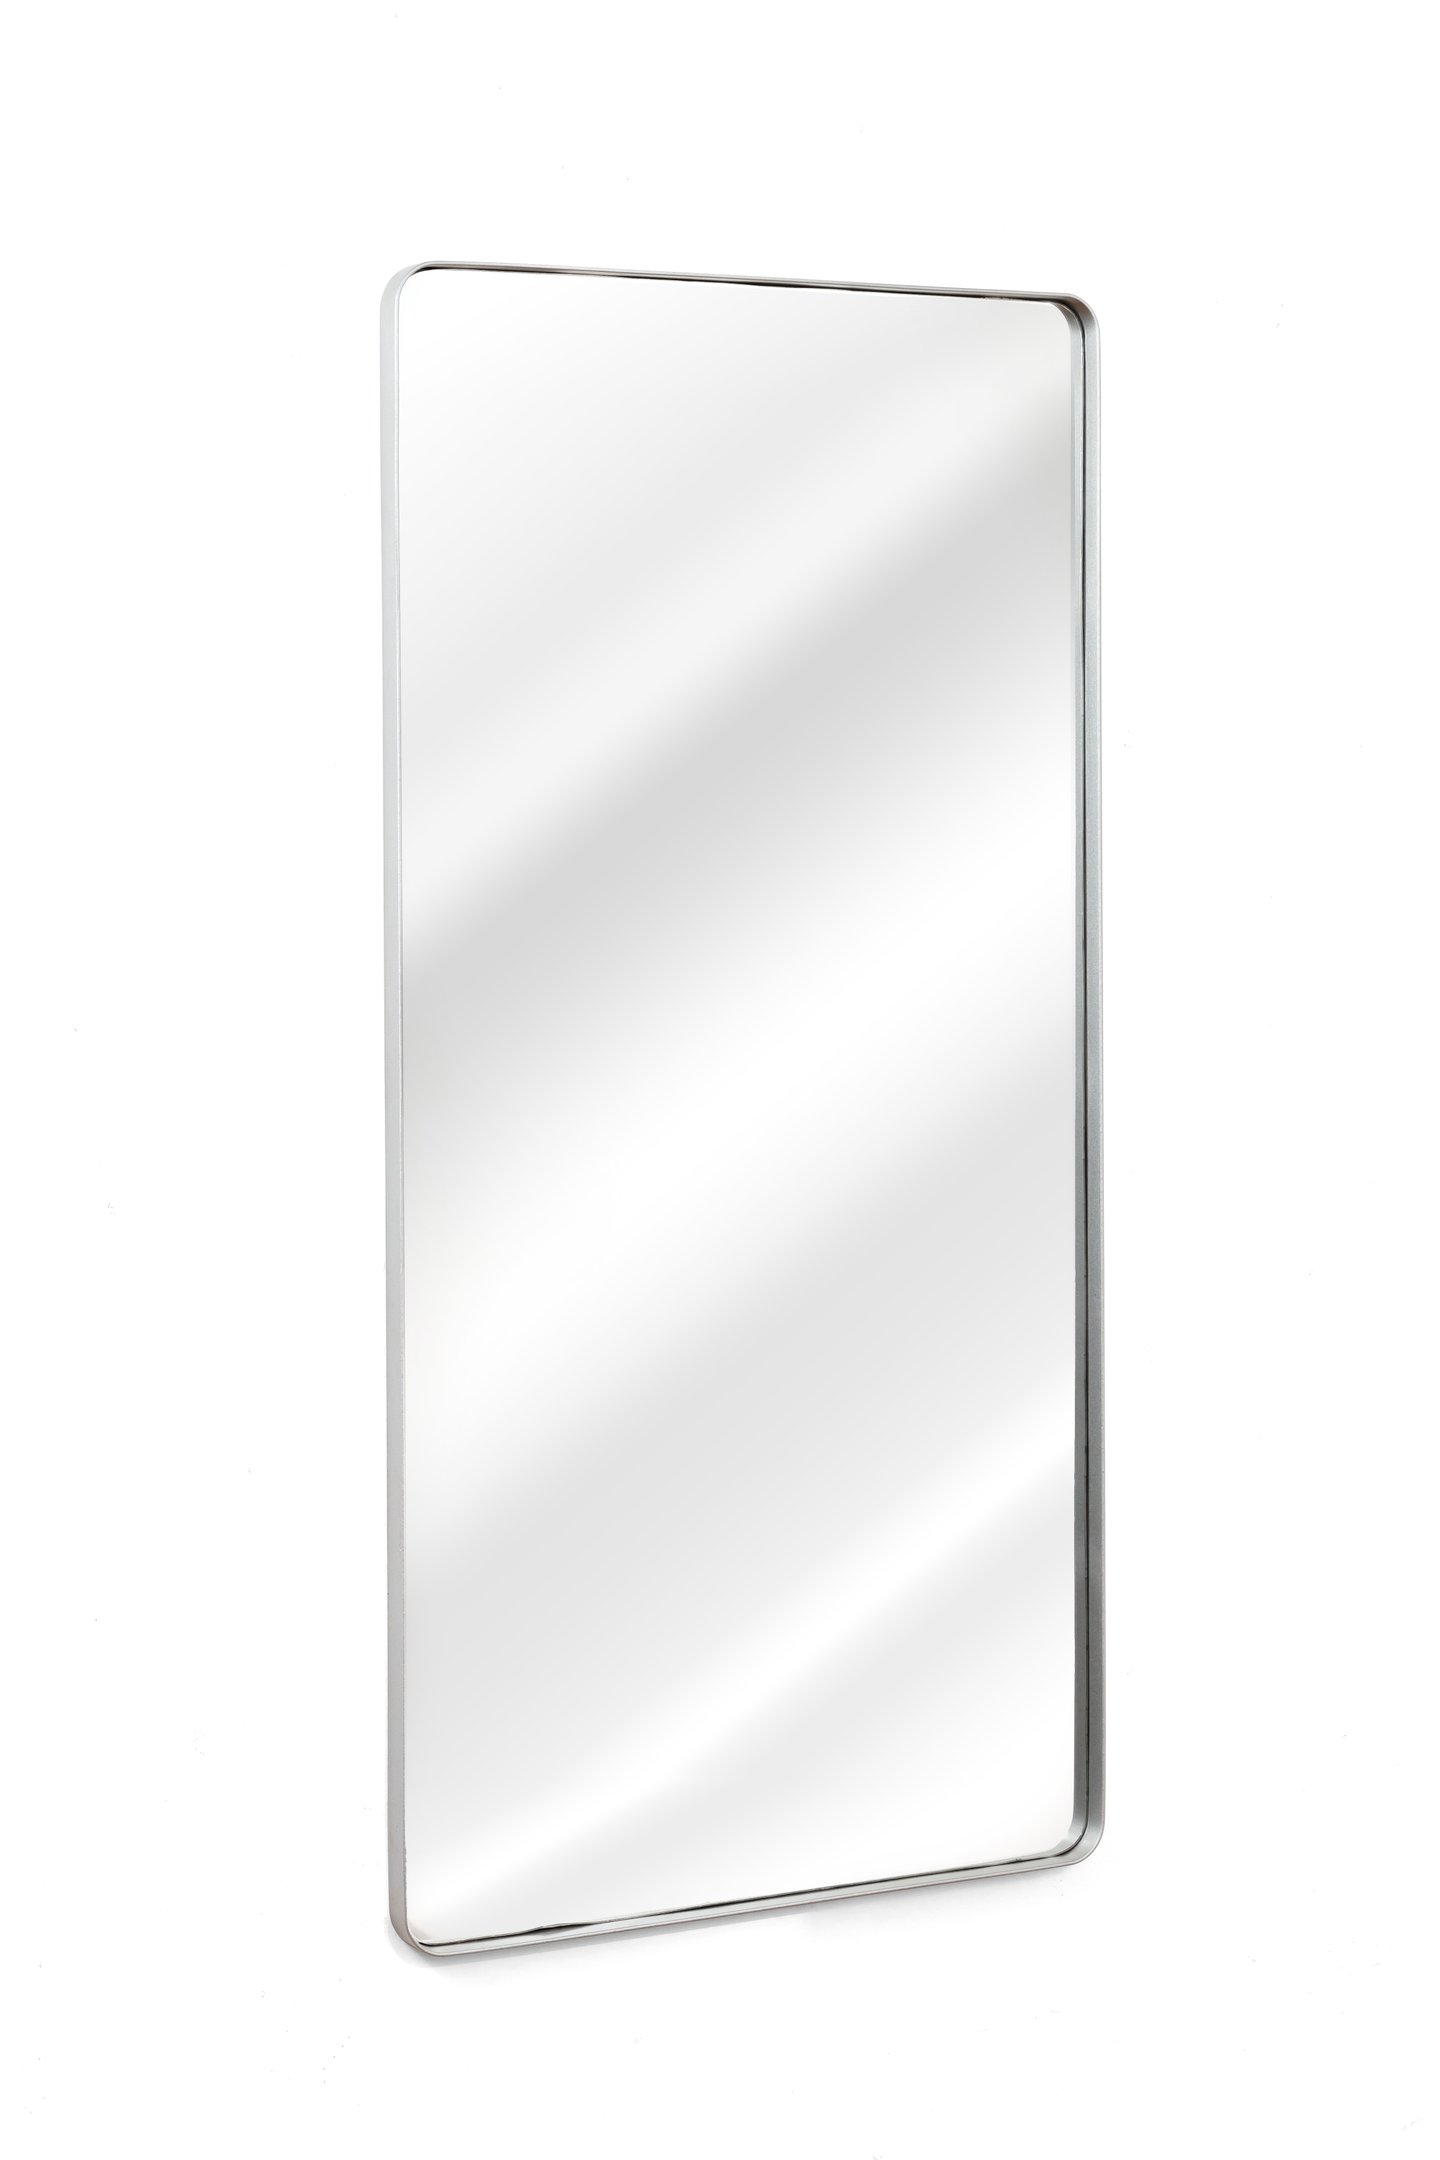 Espelho Grande Retangular Moldura Banheiro Quarto Sala 120x60 Cores:prata - 3